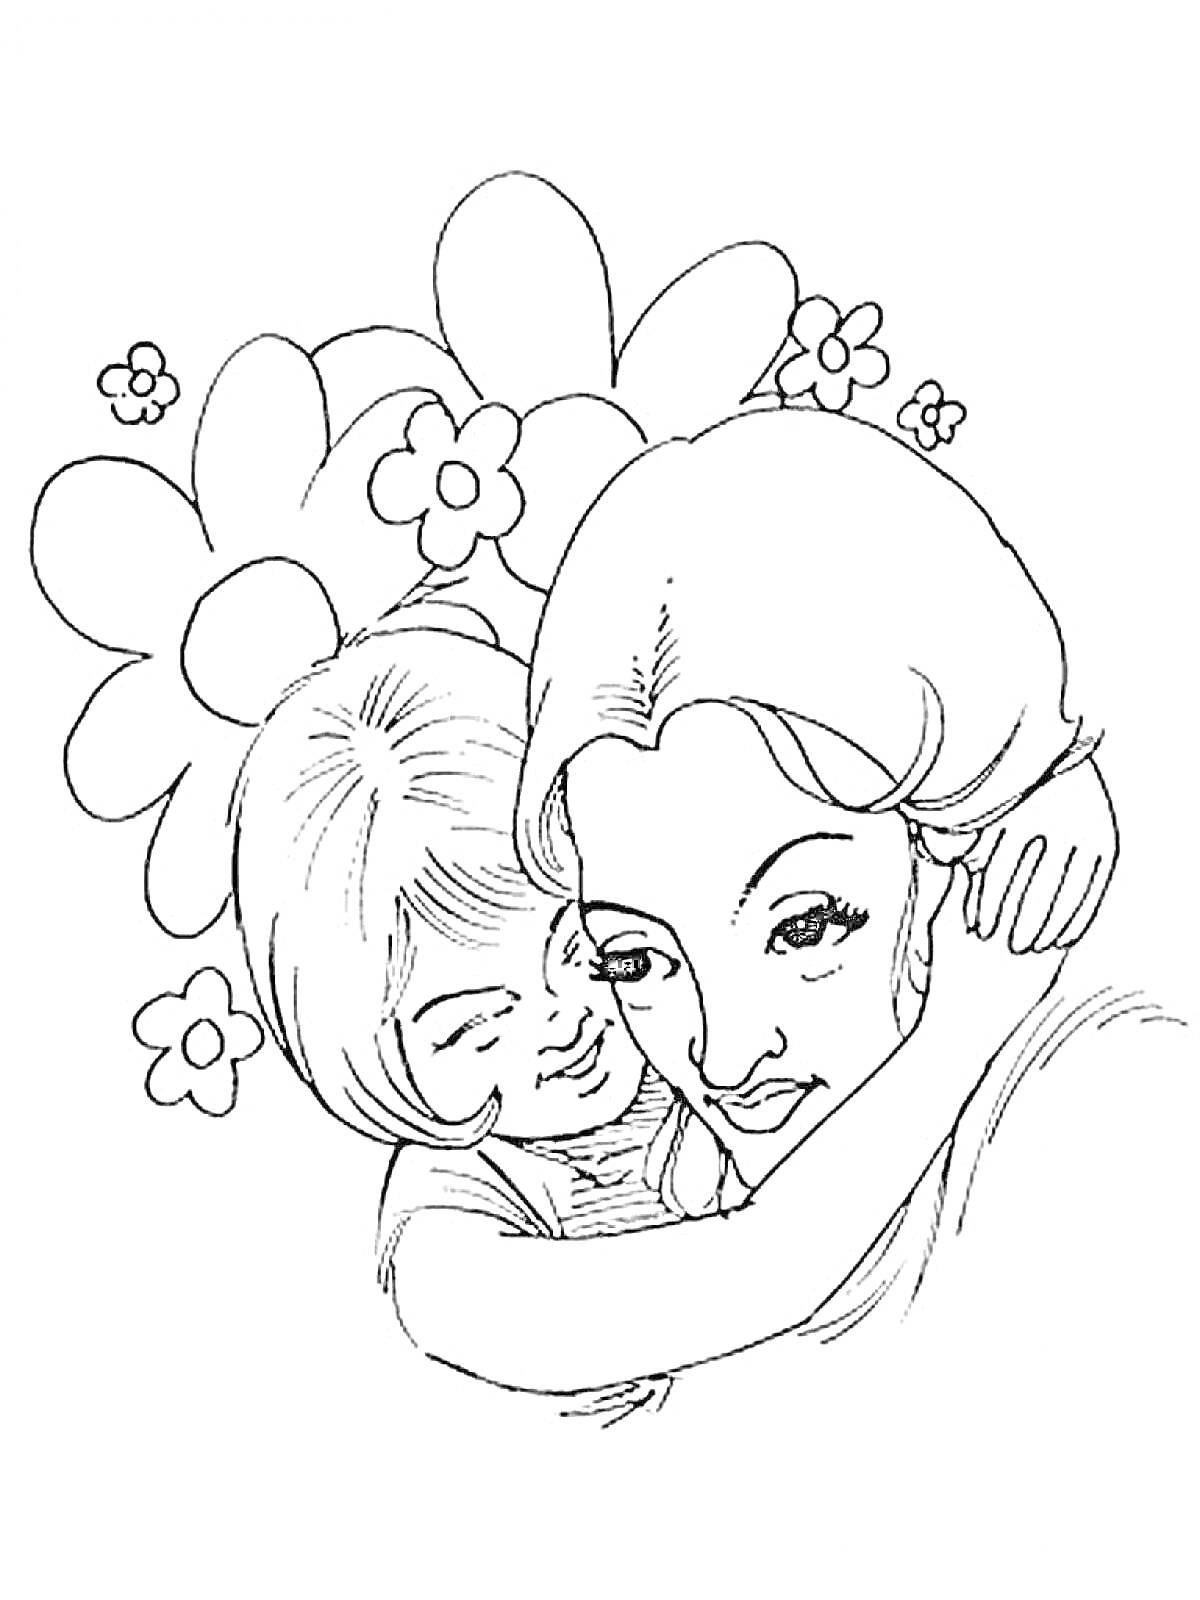 Раскраска Мама и дочка на фоне цветов, мама с длинными волосами, дочка короткими волосами, обе с улыбками обнимают друг друга